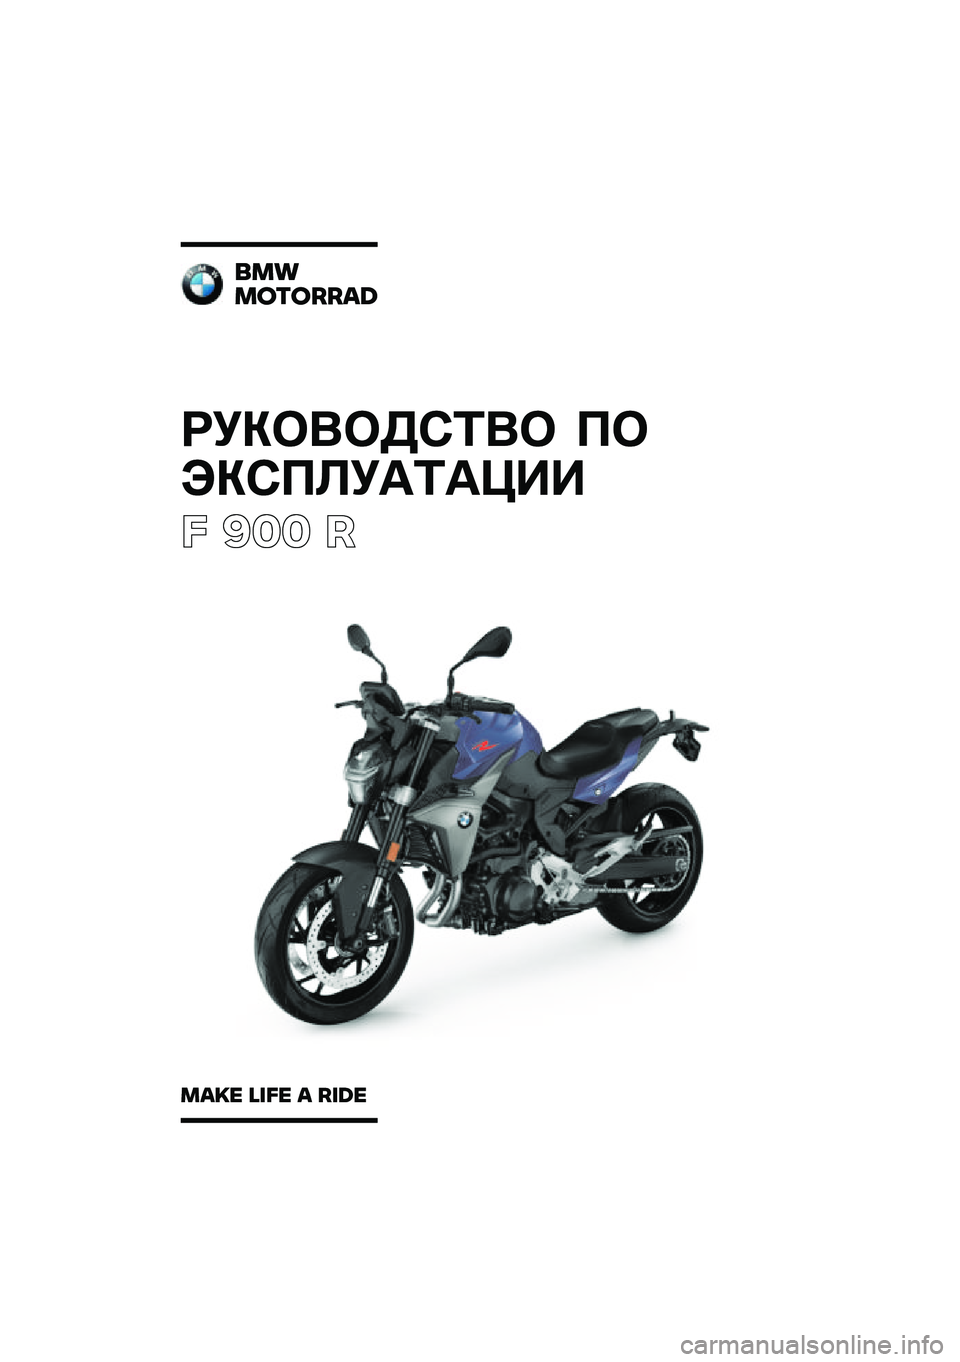 BMW MOTORRAD F 900 R 2020  Руководство по эксплуатации (in Russian) ��������\b�	�� �
�
���\b�
�\f��
�	�
���
� ��� �
���
�������\b�	
��\b�
� �\f�
�� �\b ��
�	� 